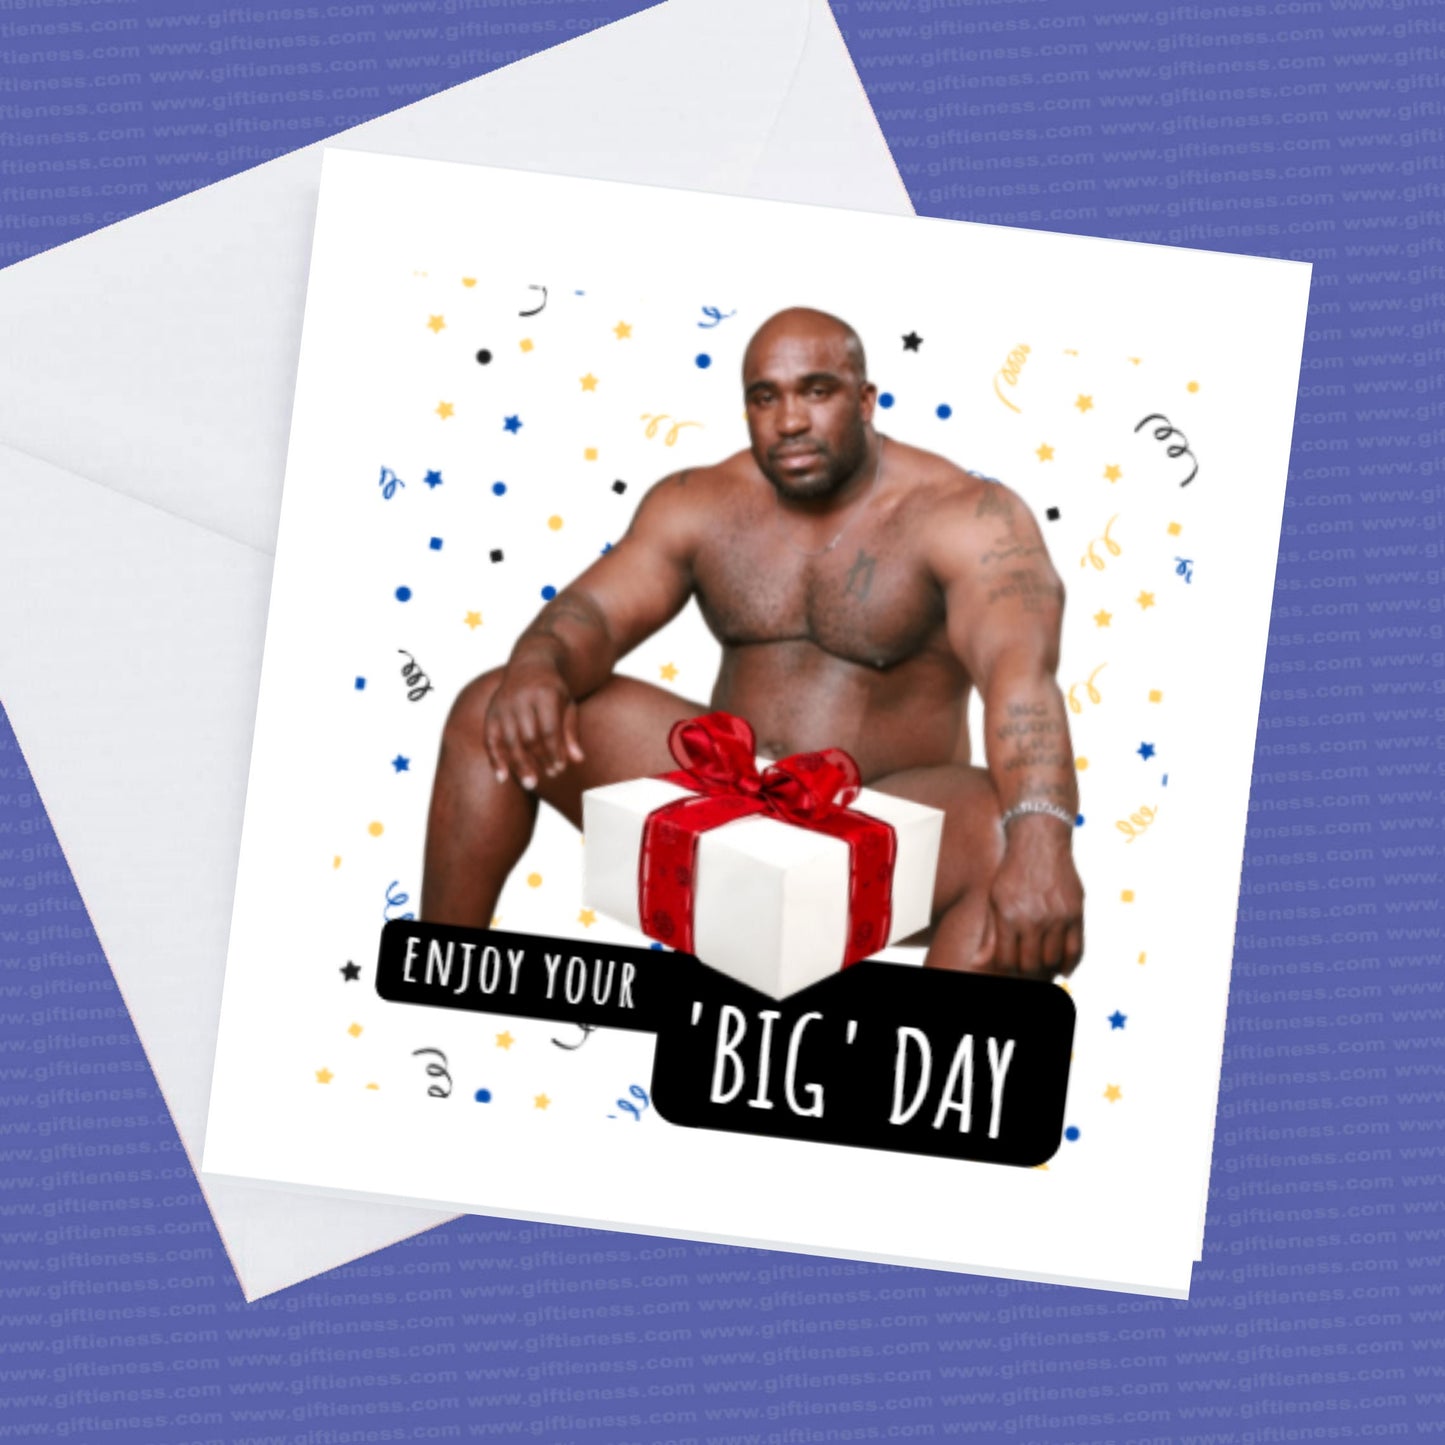 Happy Birthday Enjoy Your Big Day, Funny Barry Birthday Card